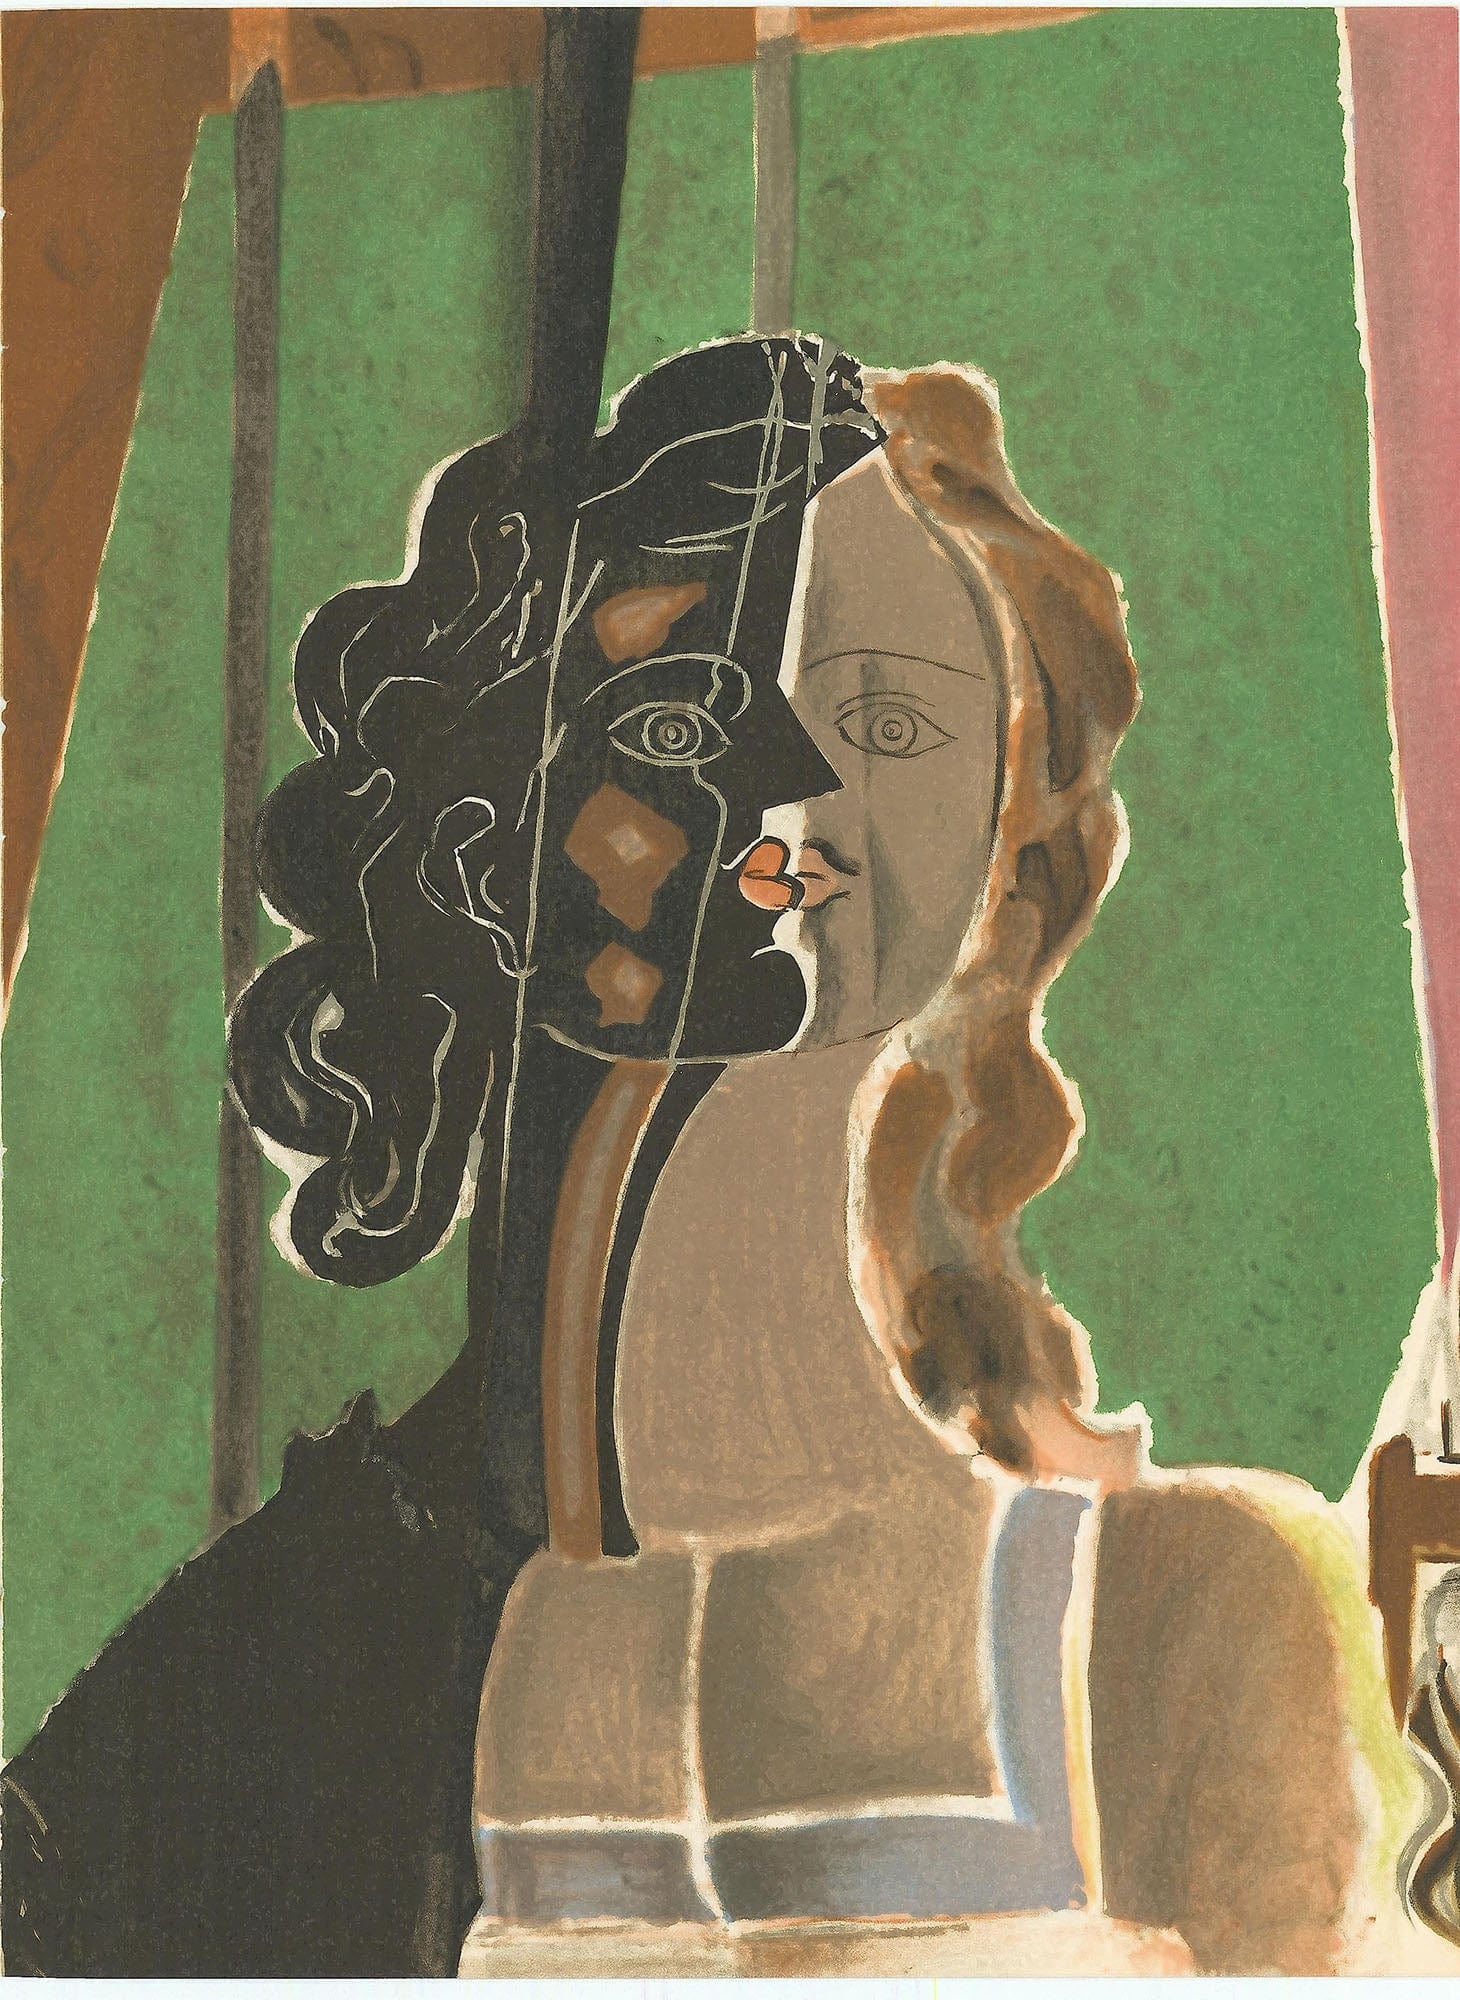 Georges Braque, "Figure" ZOOM Vol. 8 No. 31 ET 32 lithograph verve